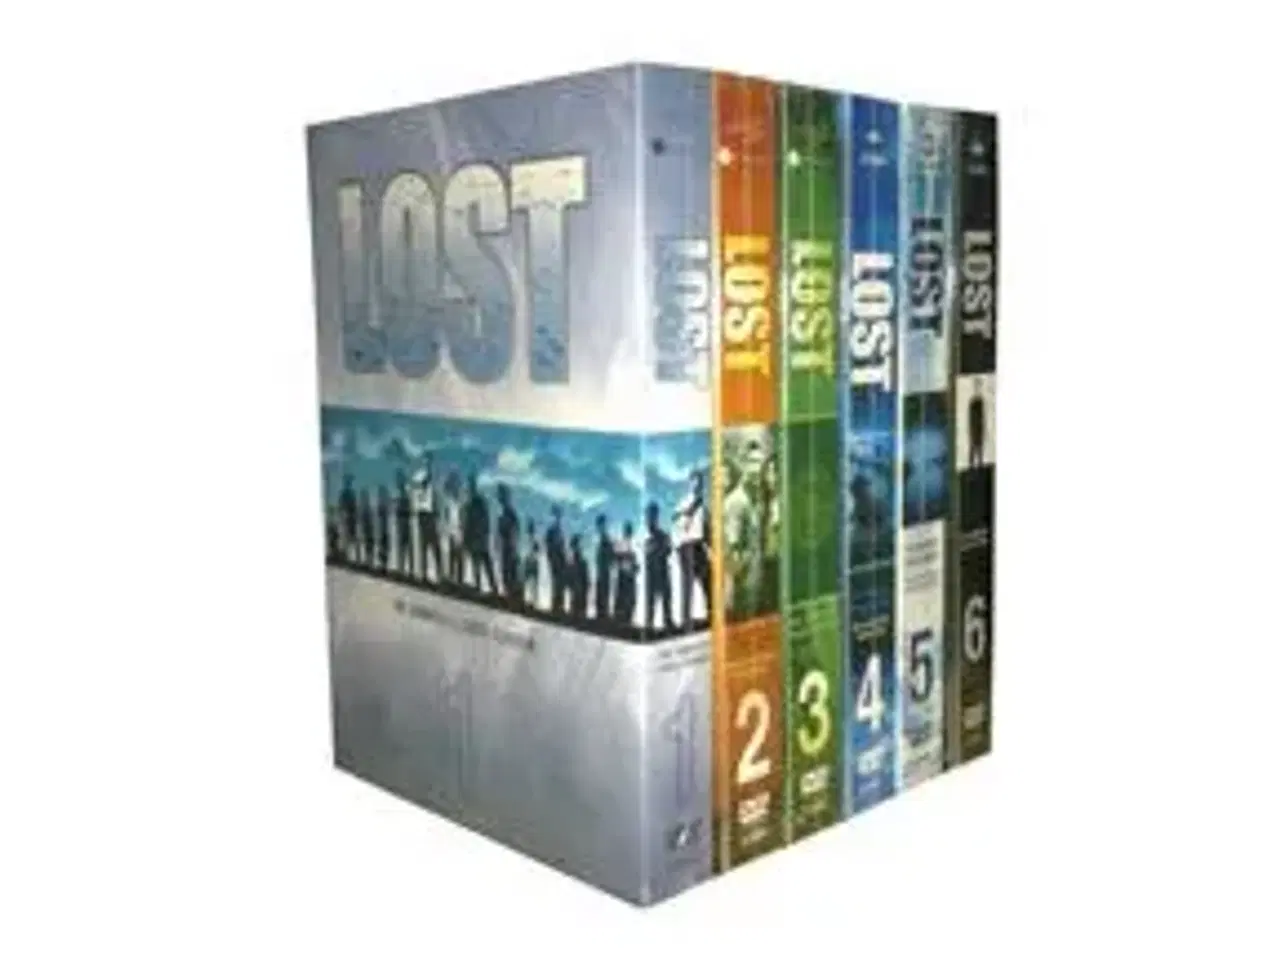 Billede 2 - komplet LOST serie ; sæson 1 til 6